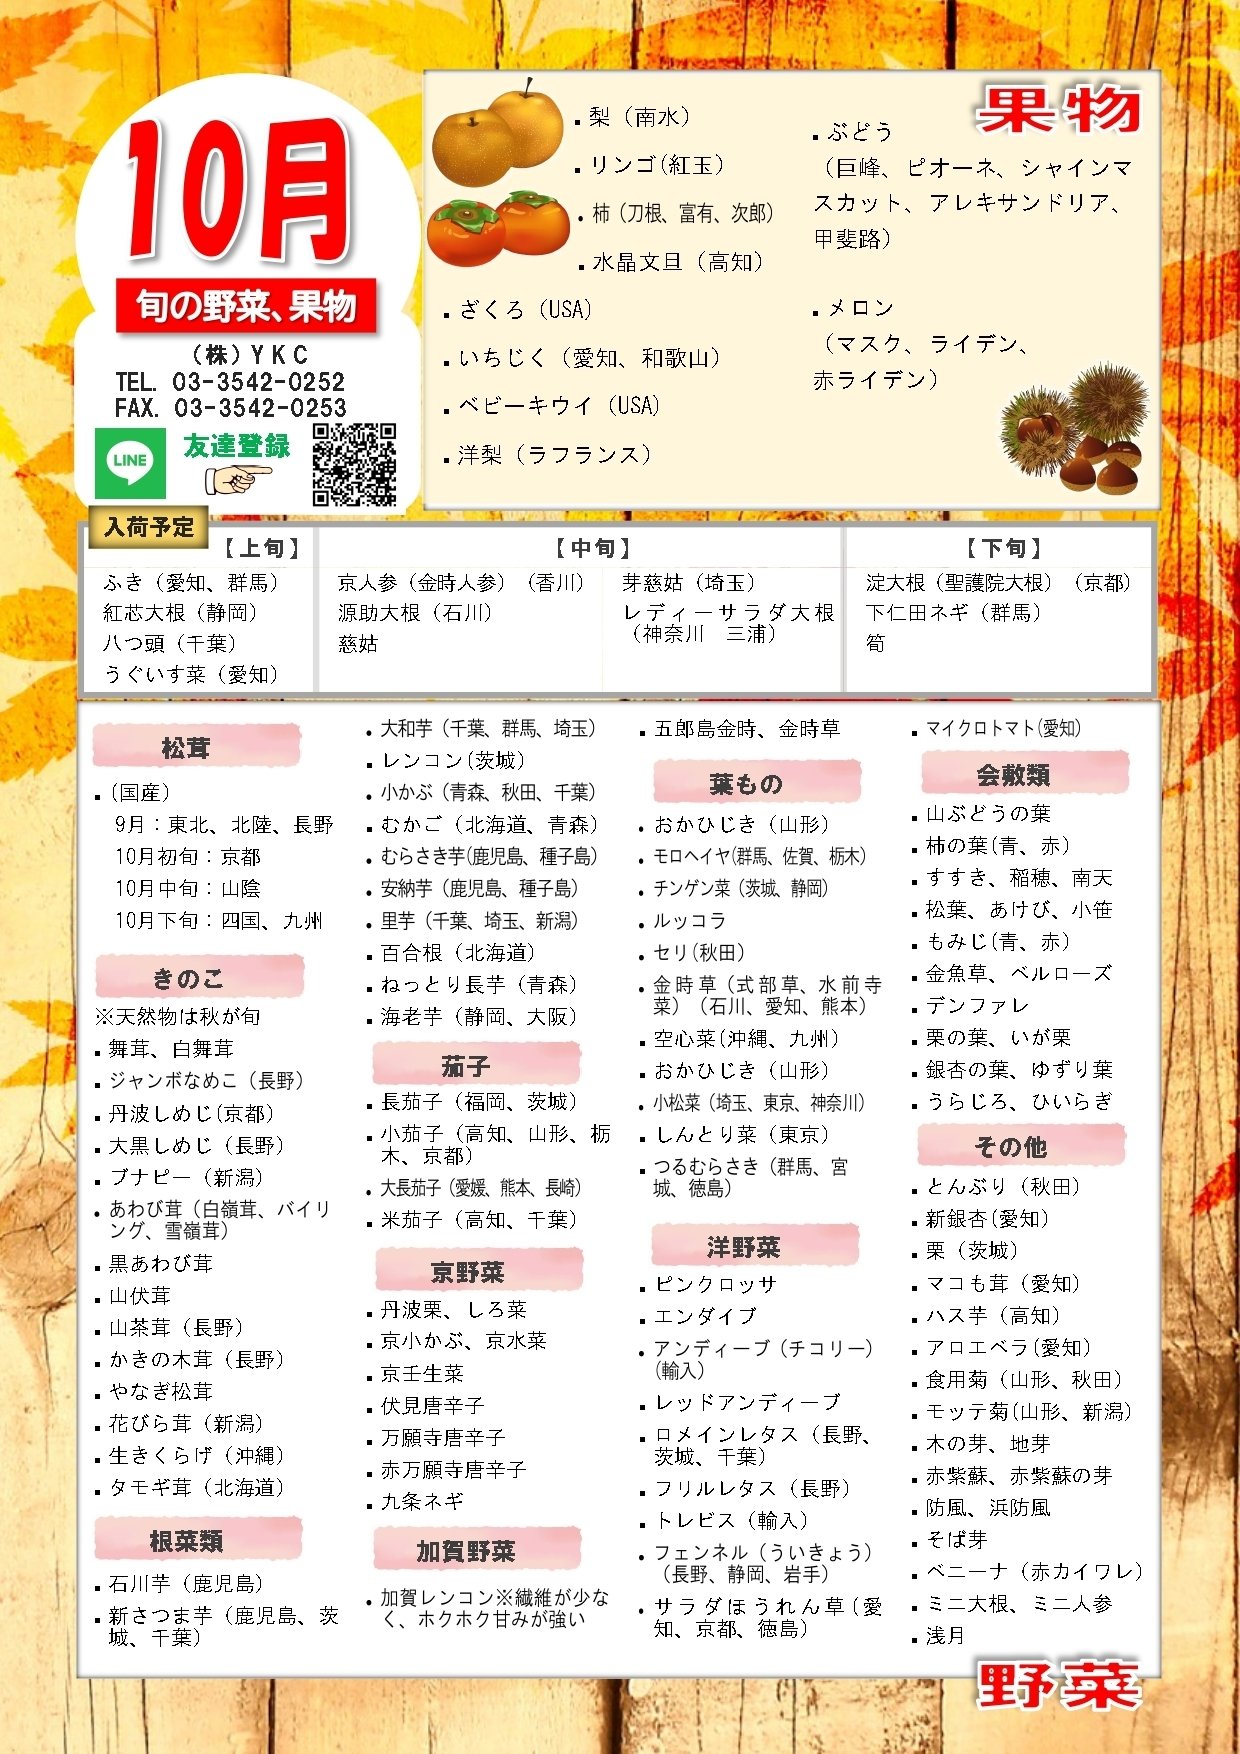 年10月の旬の野菜と果物 株式会社吉川達次郎商店 Note